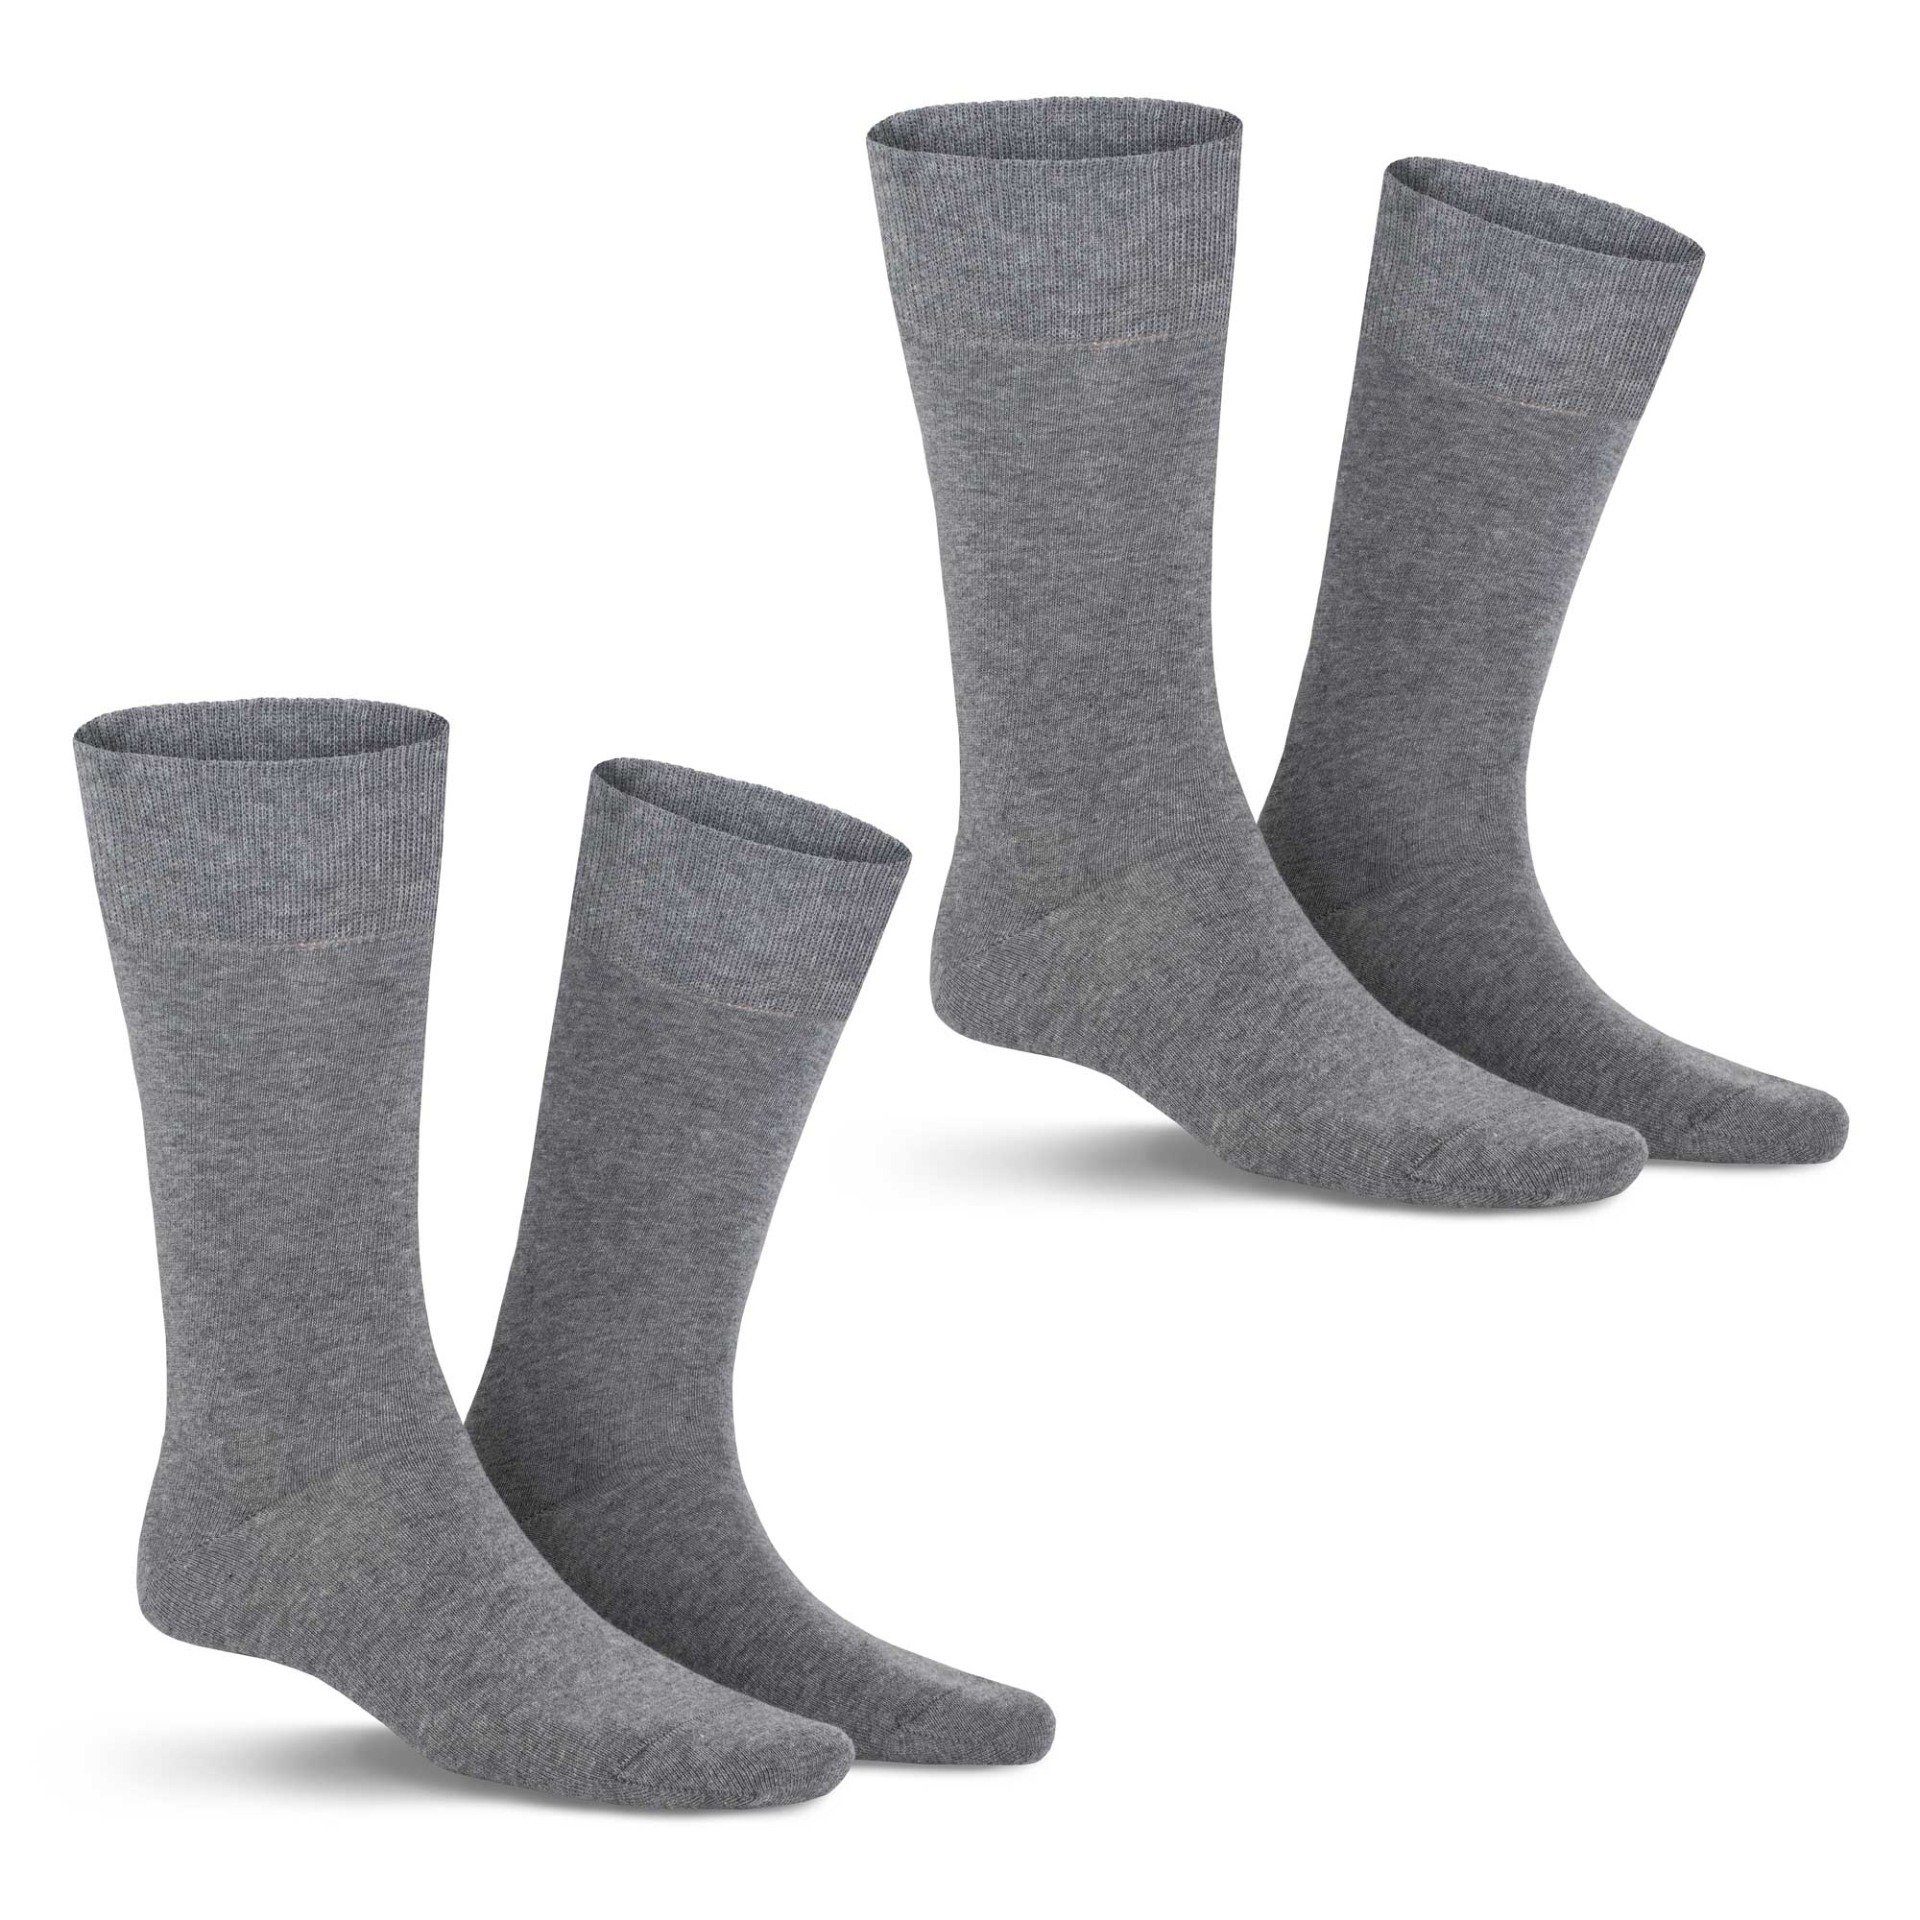 KUNERT Basicsocken COMFORT COTTON 2-PACK Socken hohem Brown-mel. Herren im Baumwoll-Anteil mit 8210 (2-Paar) Doppelpack